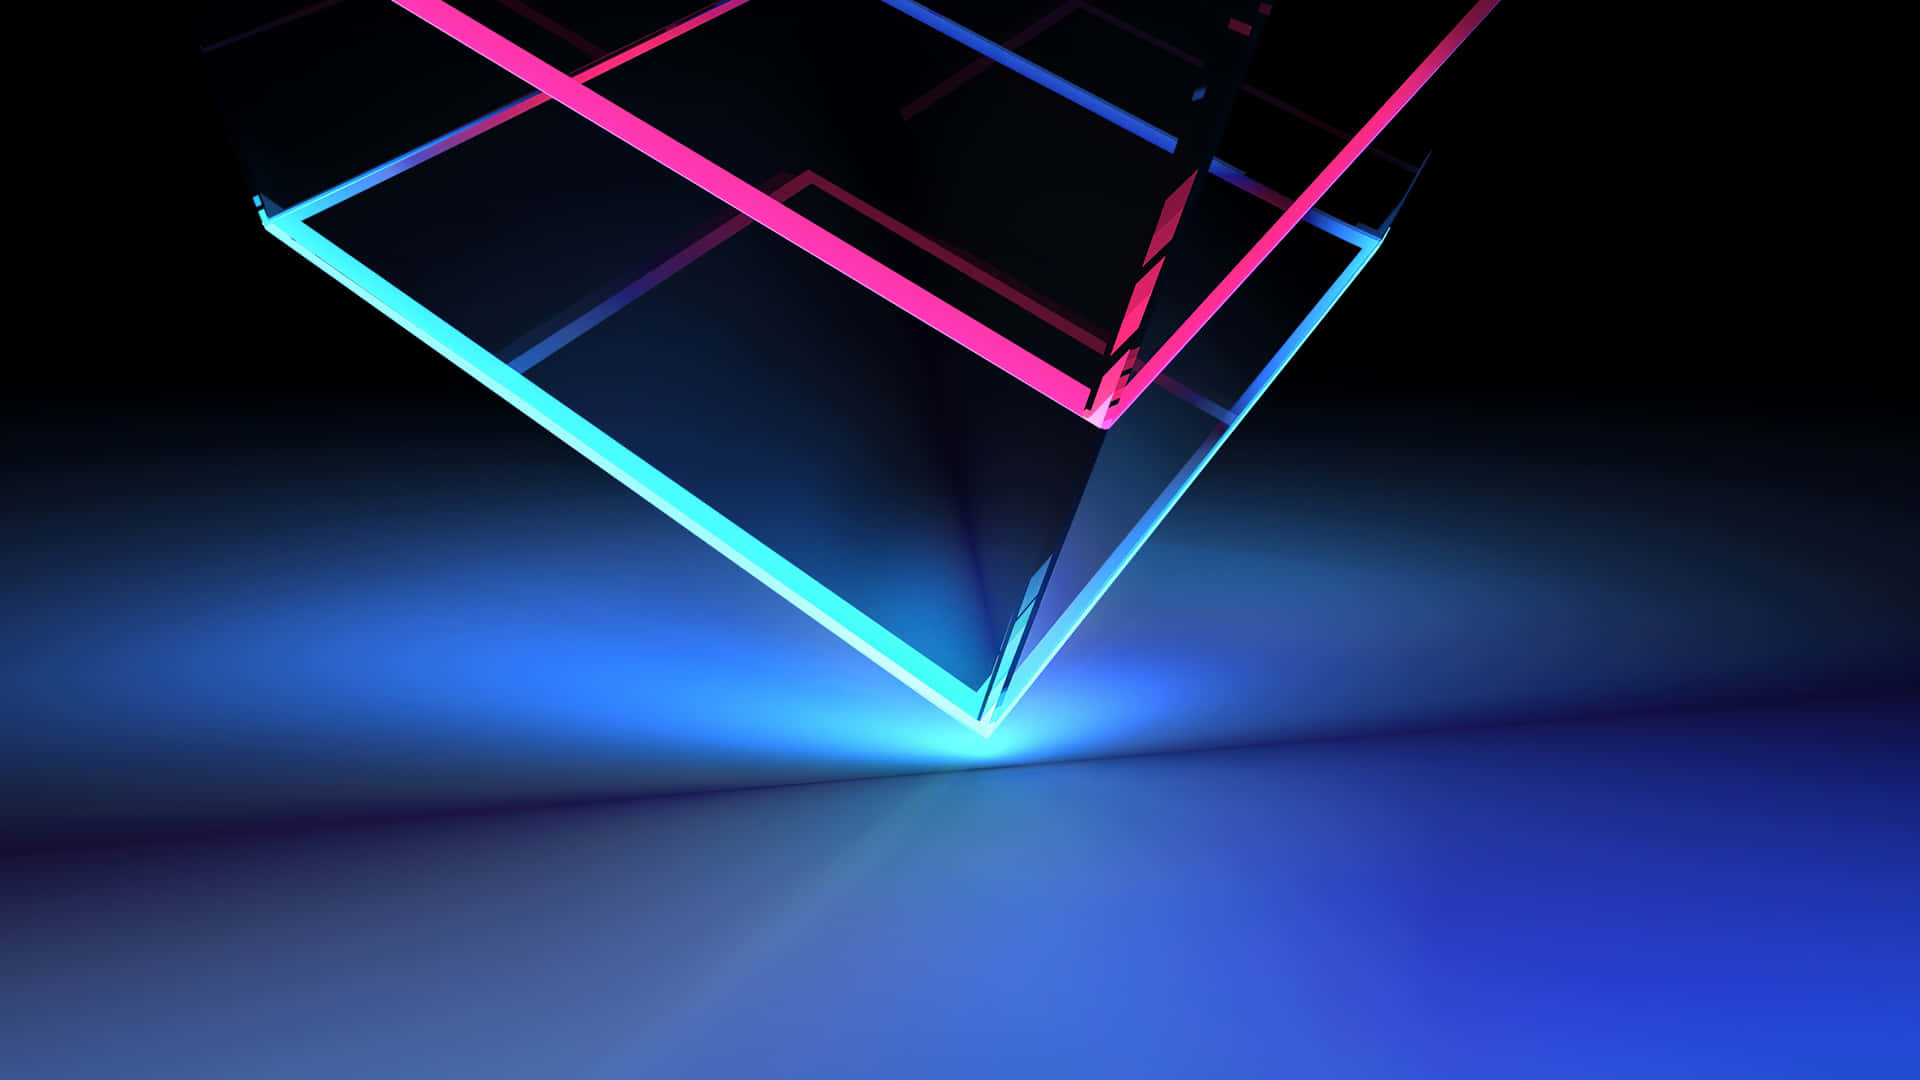 Abstract Neon Triangle Illumination Wallpaper